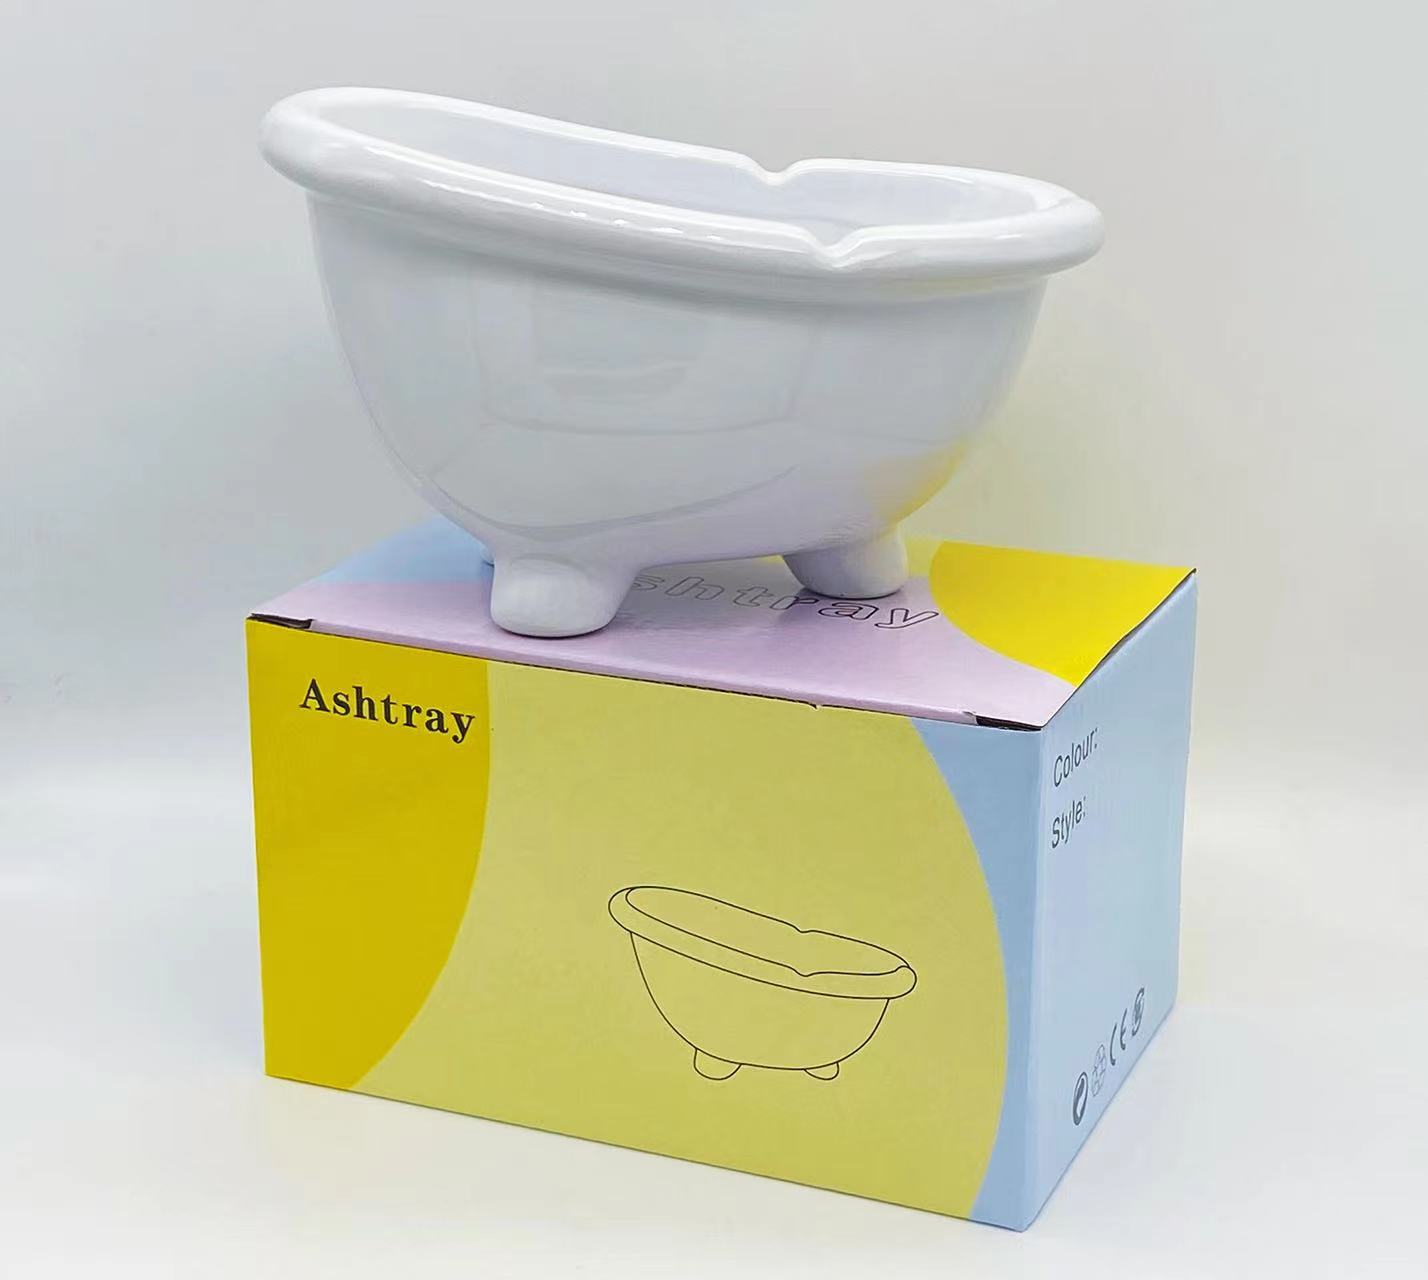 迷你浴缸陶瓷烟灰缸卫浴赠品创意广告礼品定制LOGO经典款